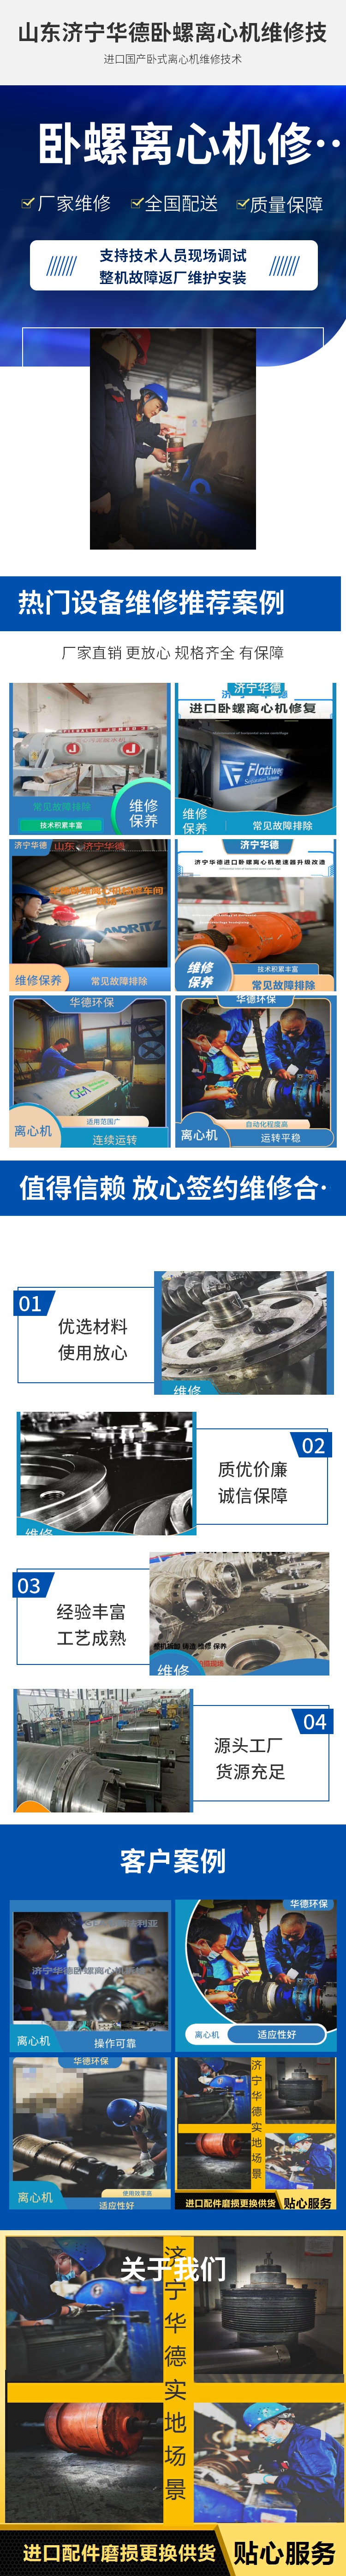 上海浦东市政污水卧螺离心机整机噪音晃动维修